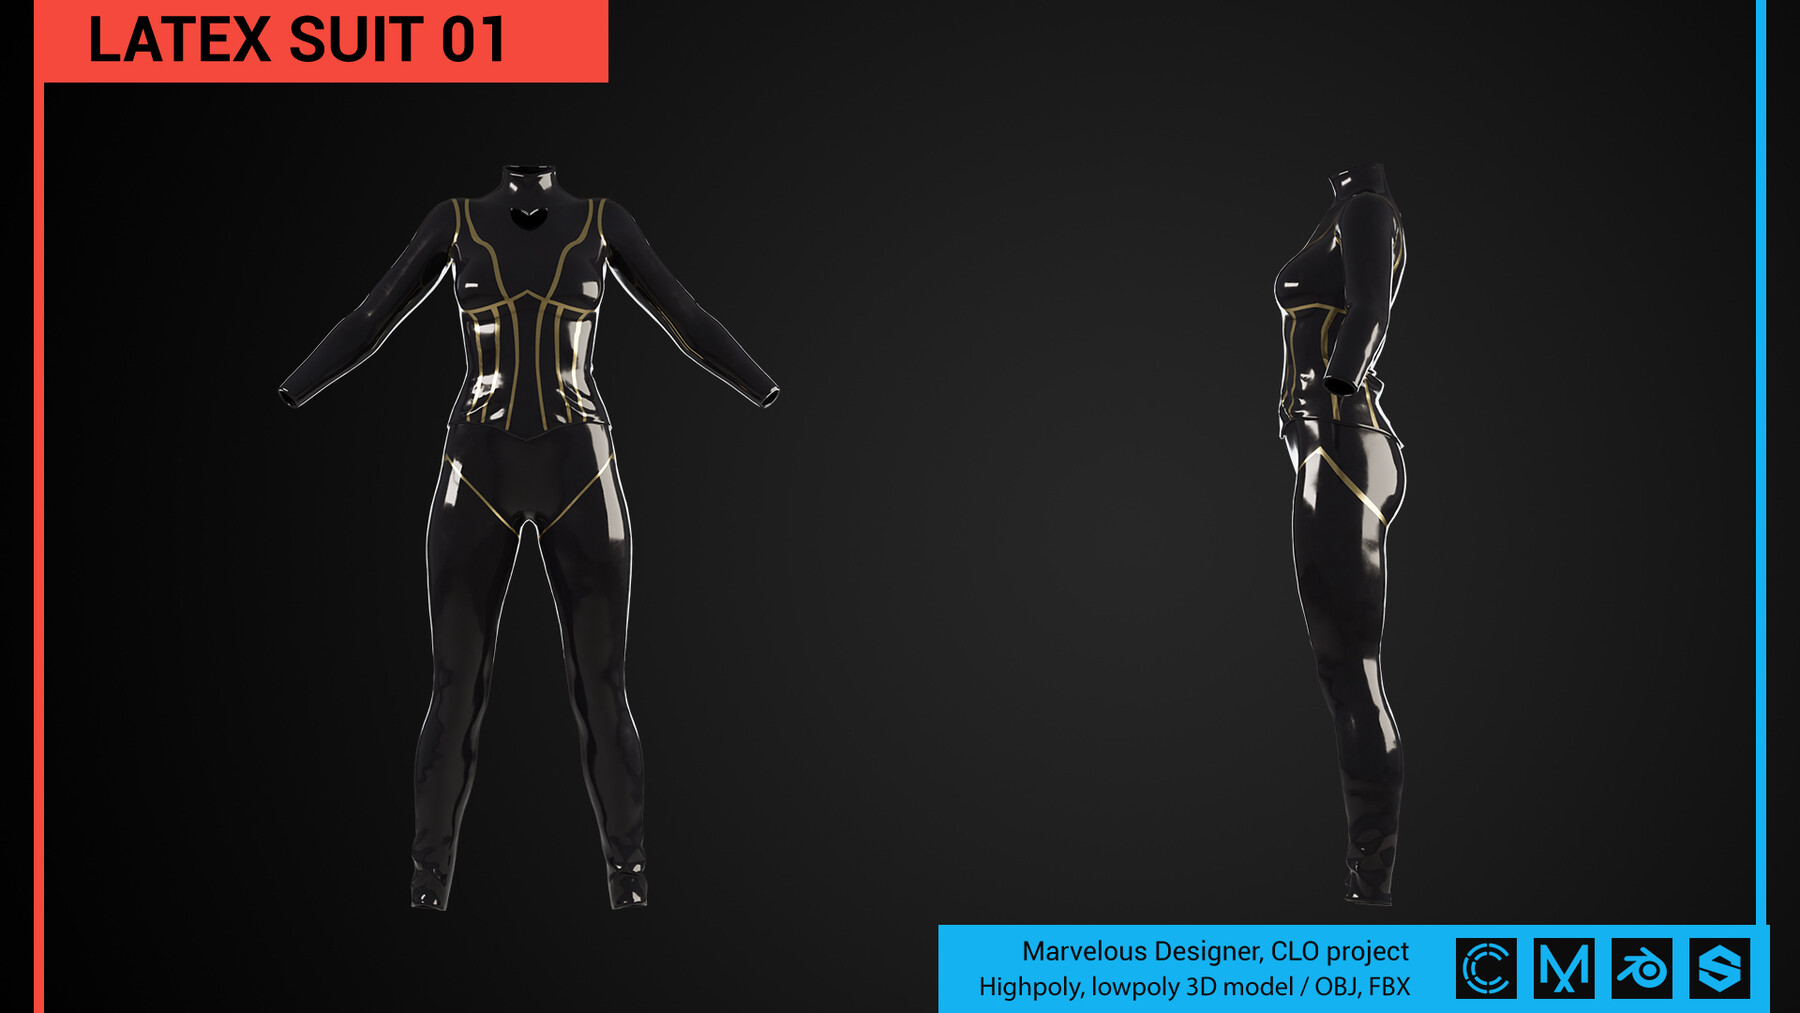 ArtStation - Latex suit 01 - Marvelous Designer, CLO project.